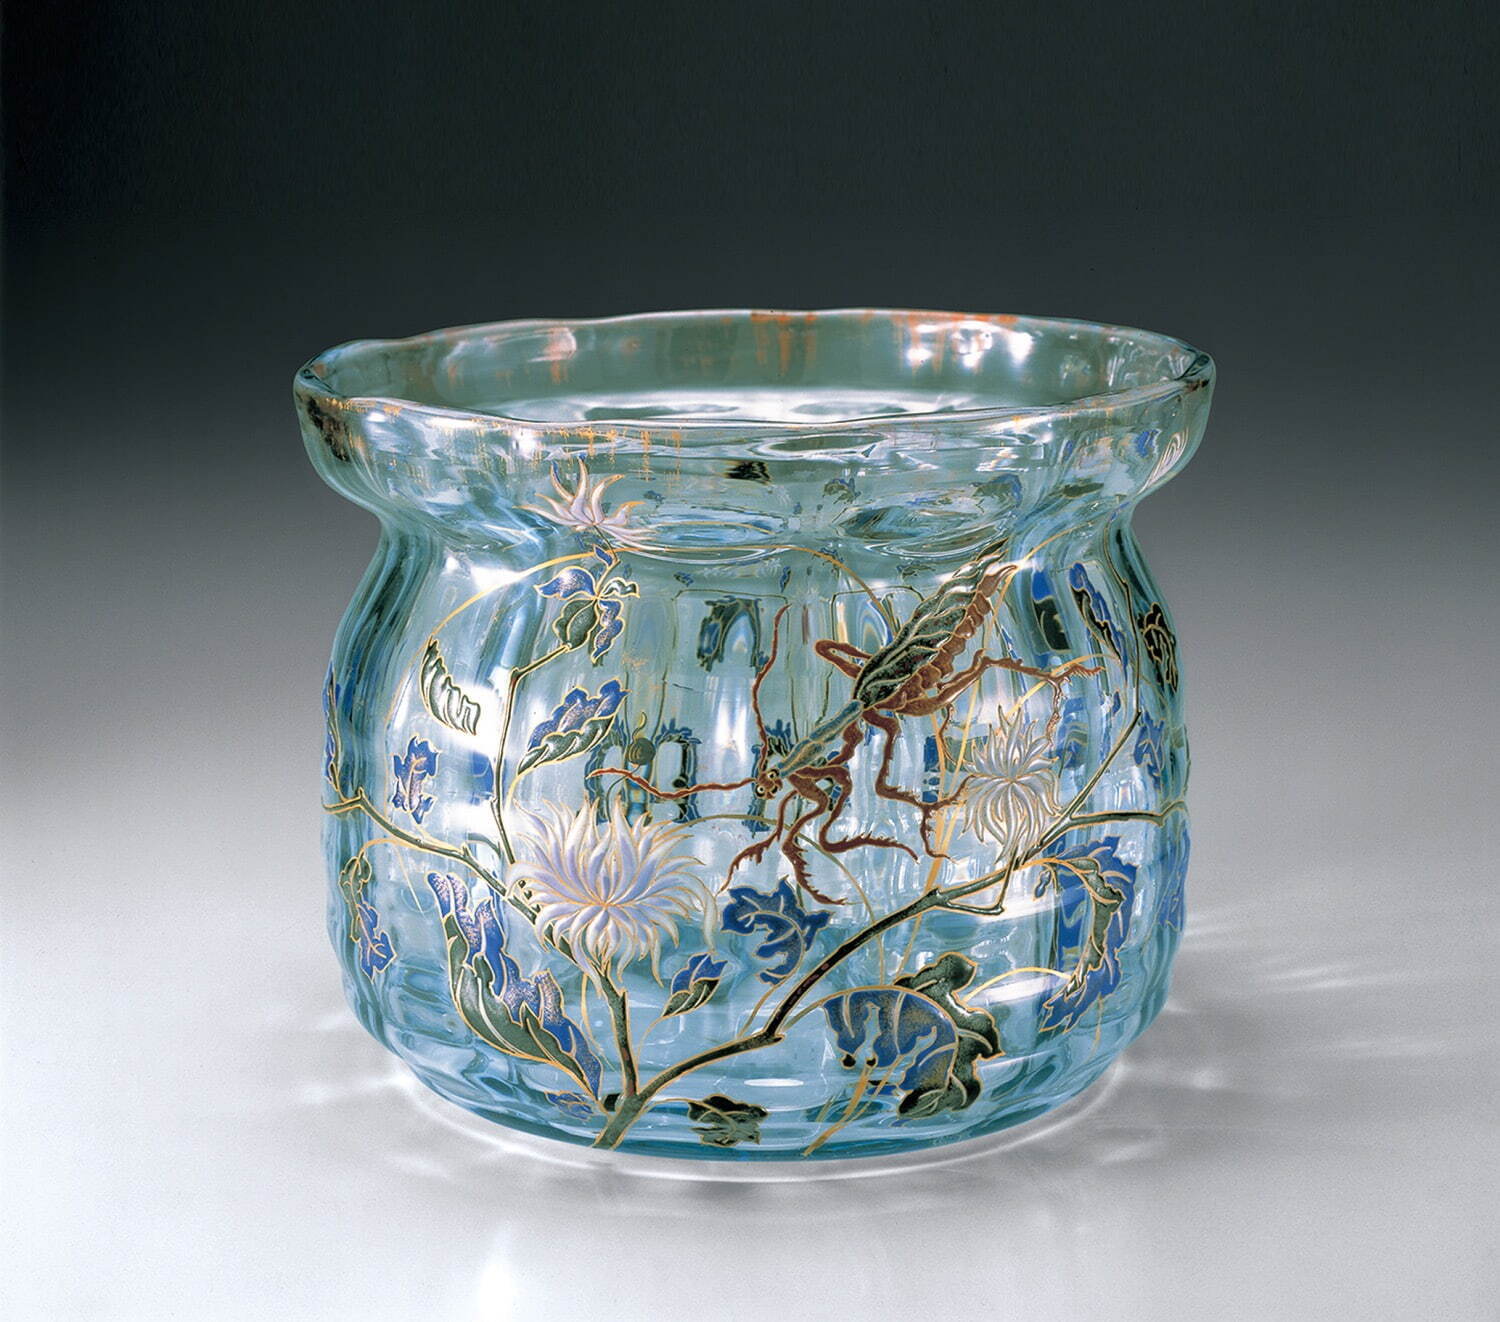 1453【ガラス花瓶】アールヌーヴォー ヨハン レッツ ヴィトヴェ Loetz